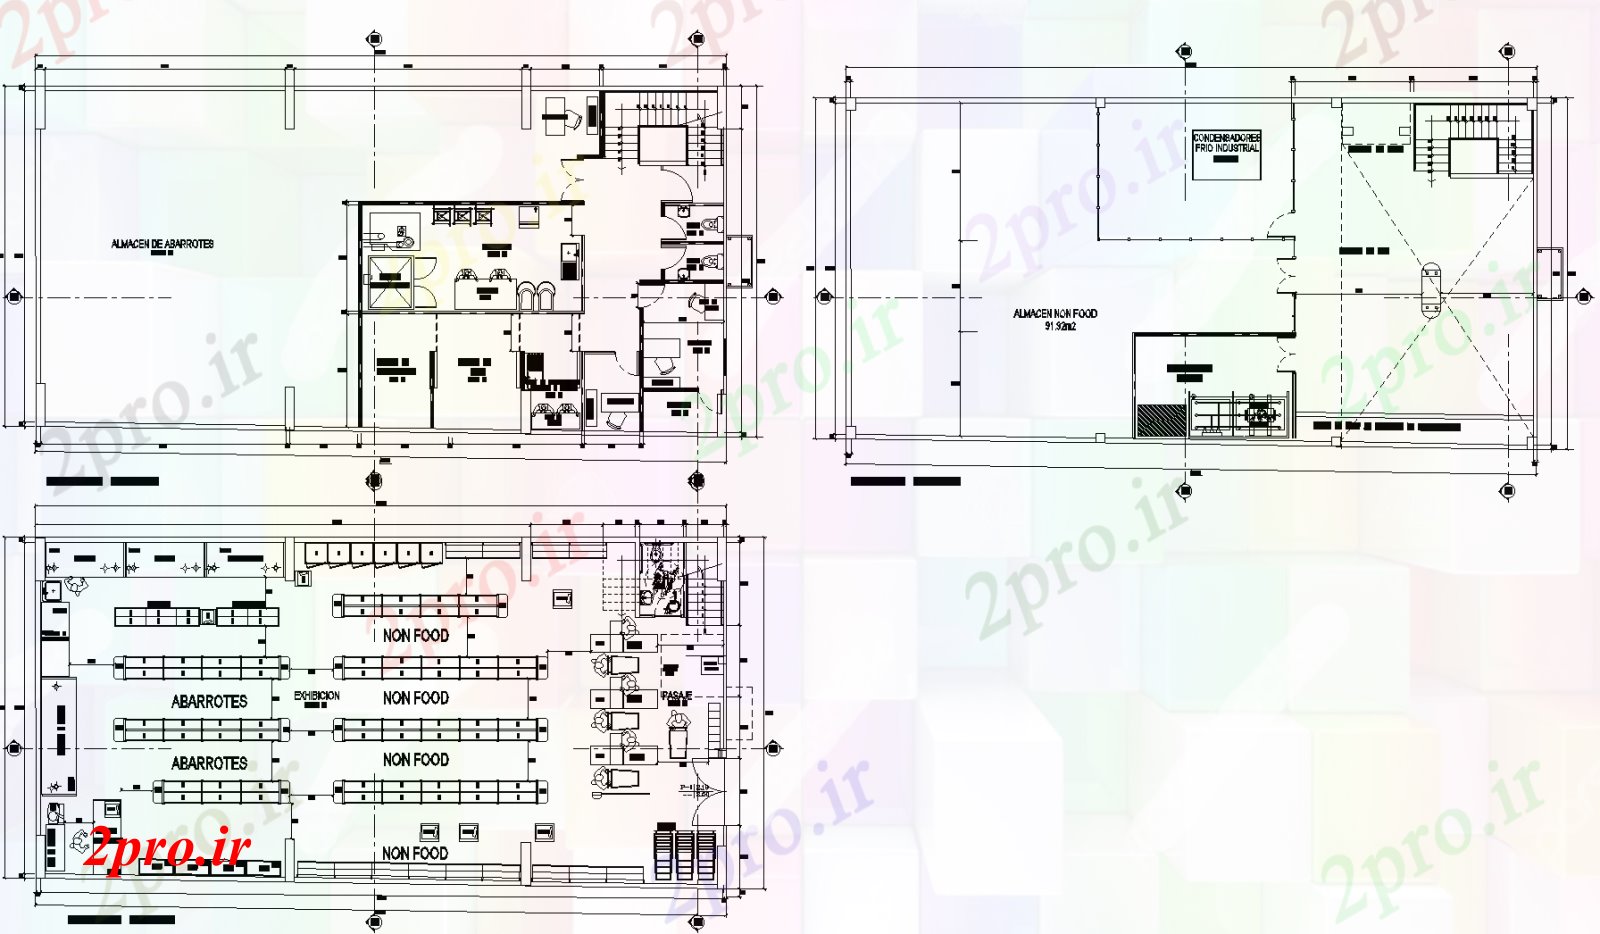 دانلود نقشه هایپر مارکت - مرکز خرید - فروشگاه جزئیات پروژه سوپر مارکت طرحی جزئیات 11 در 22 متر (کد73844)